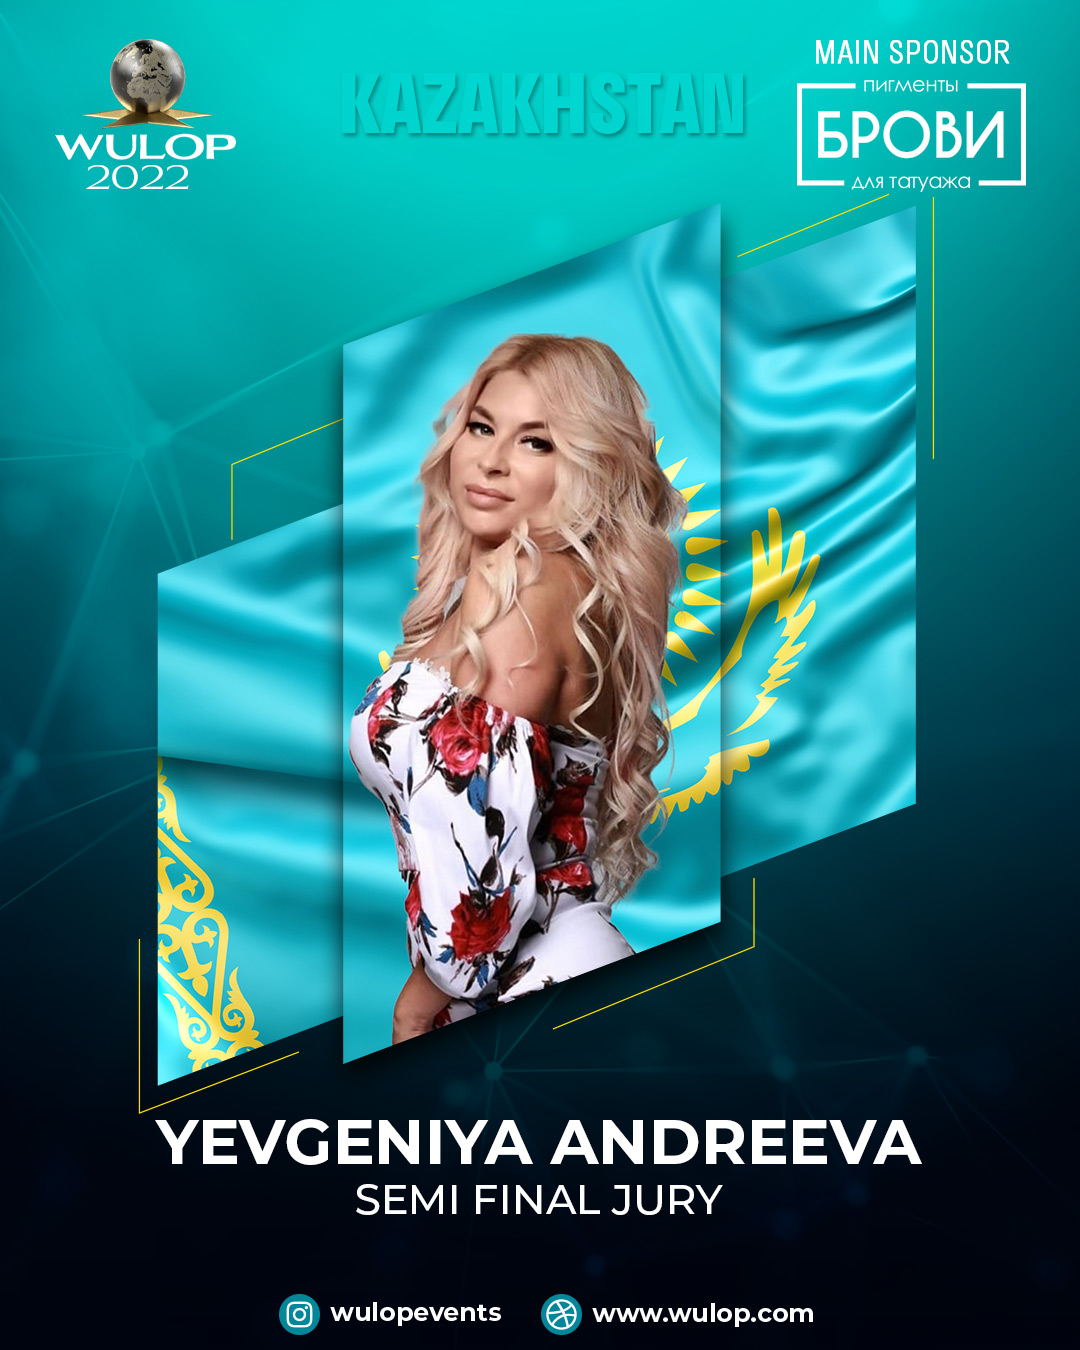 Yevgeniya Andreeva